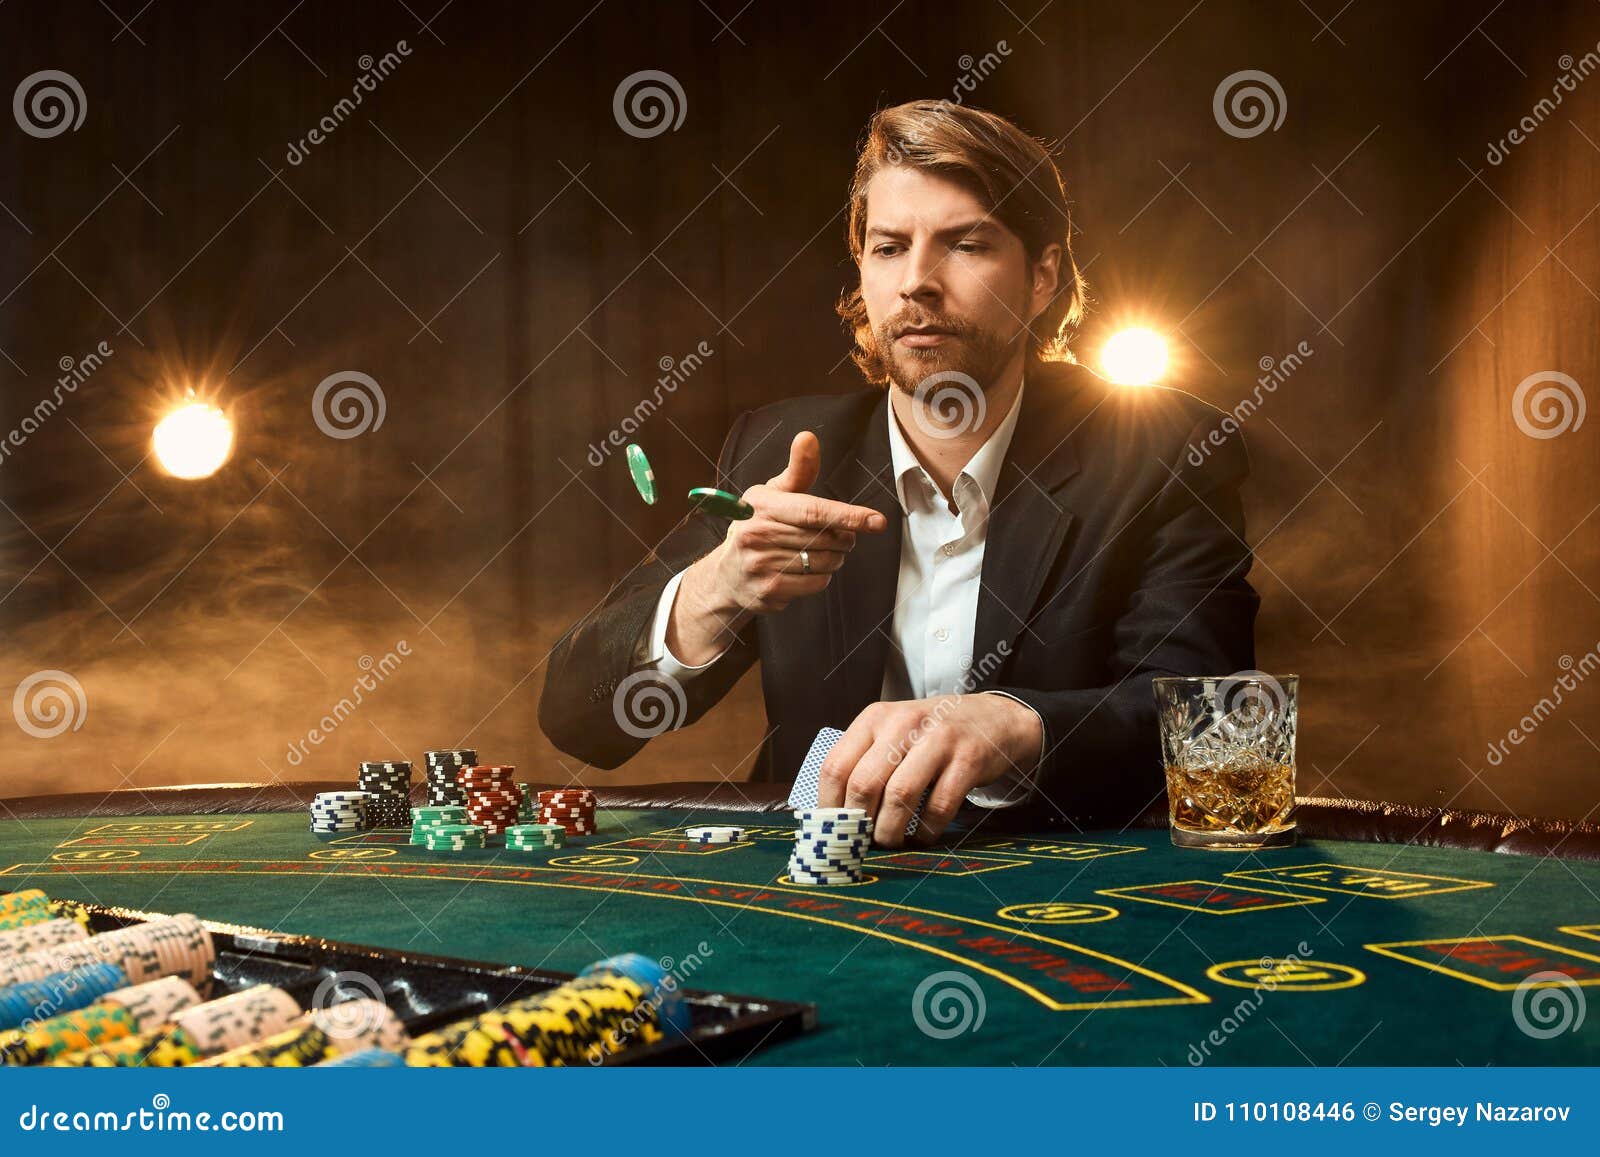 В предвкушении азарта. Мужчина в казино. Мужика за столом покерным. Мужчина в казино арт. Казино мужик с сигарой.